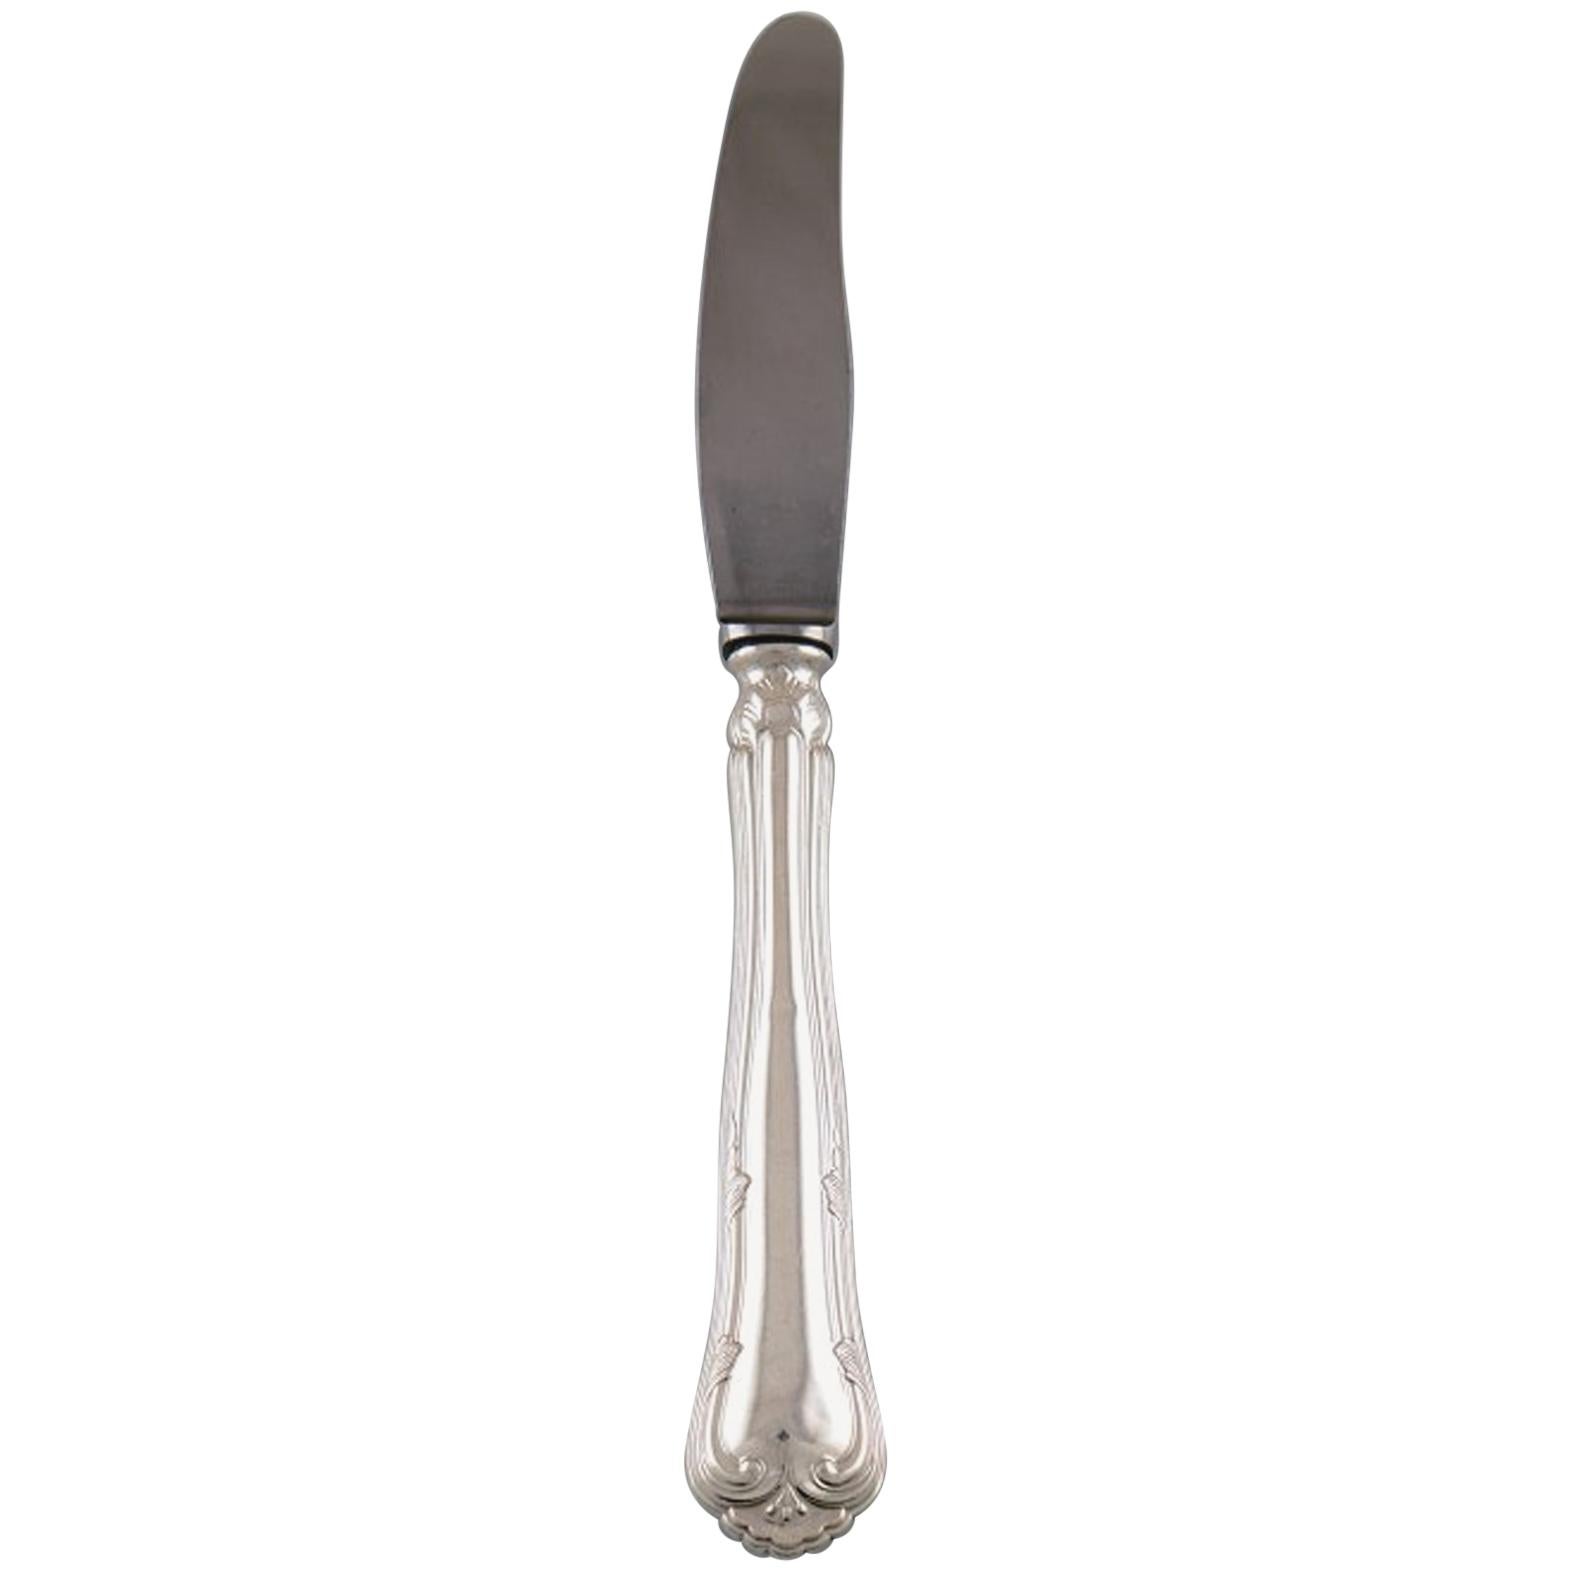 Set of Twelve "Cohr Herregaard" Dinner Knives, Cutlery in Silver